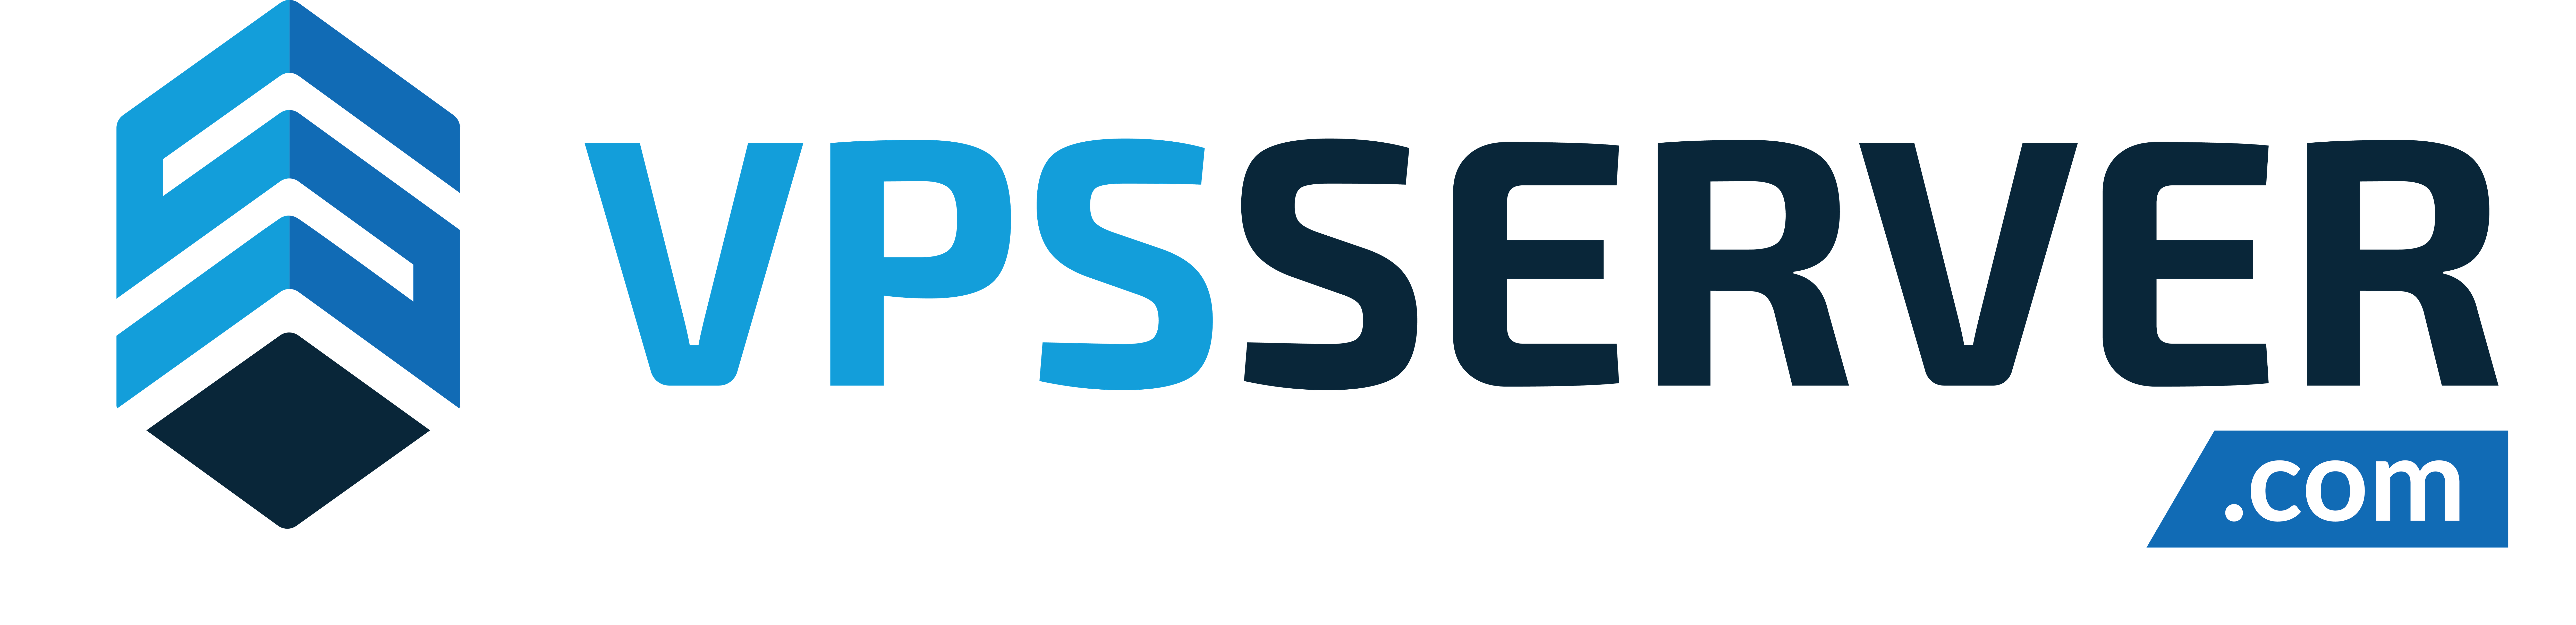 VPSServer.com